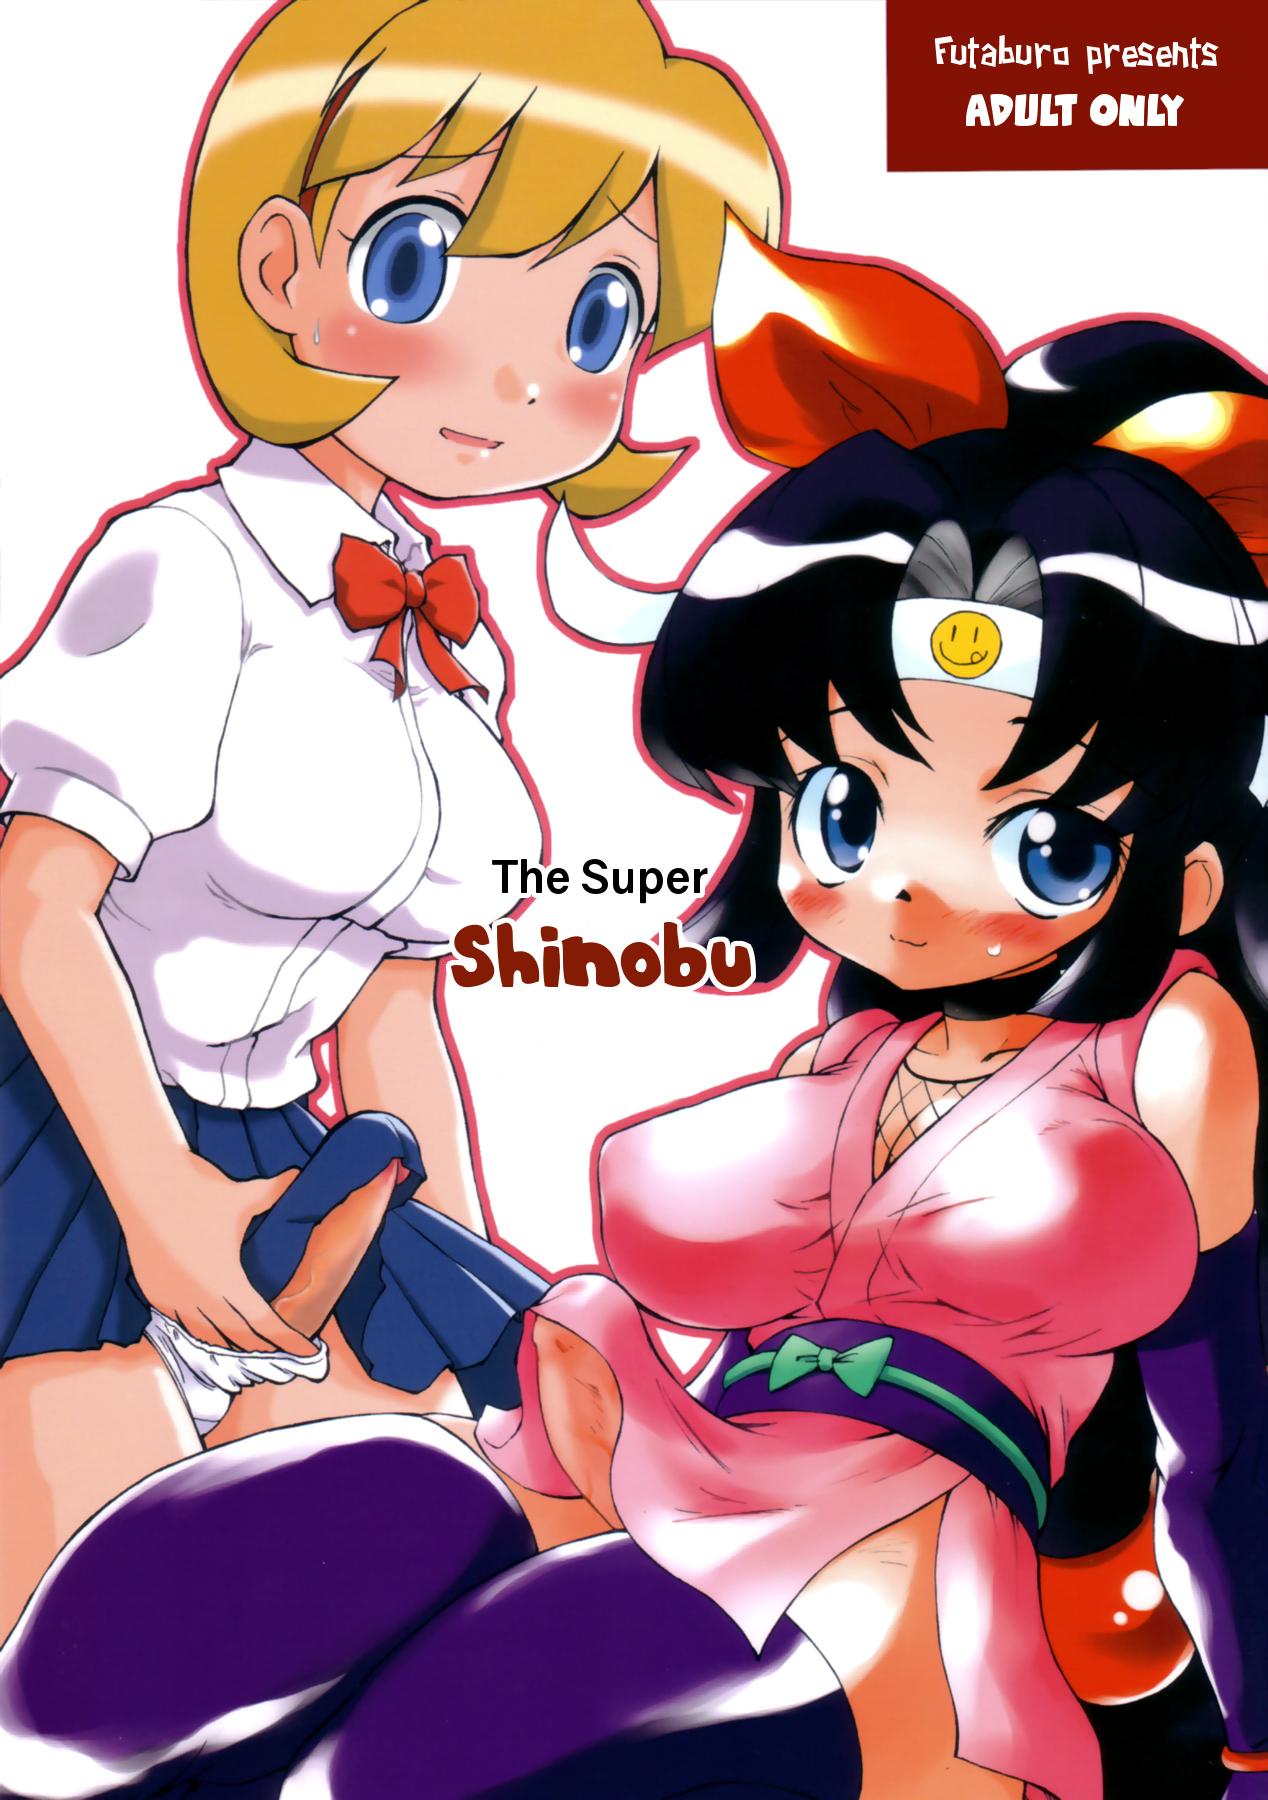 The Super Shinobu 0